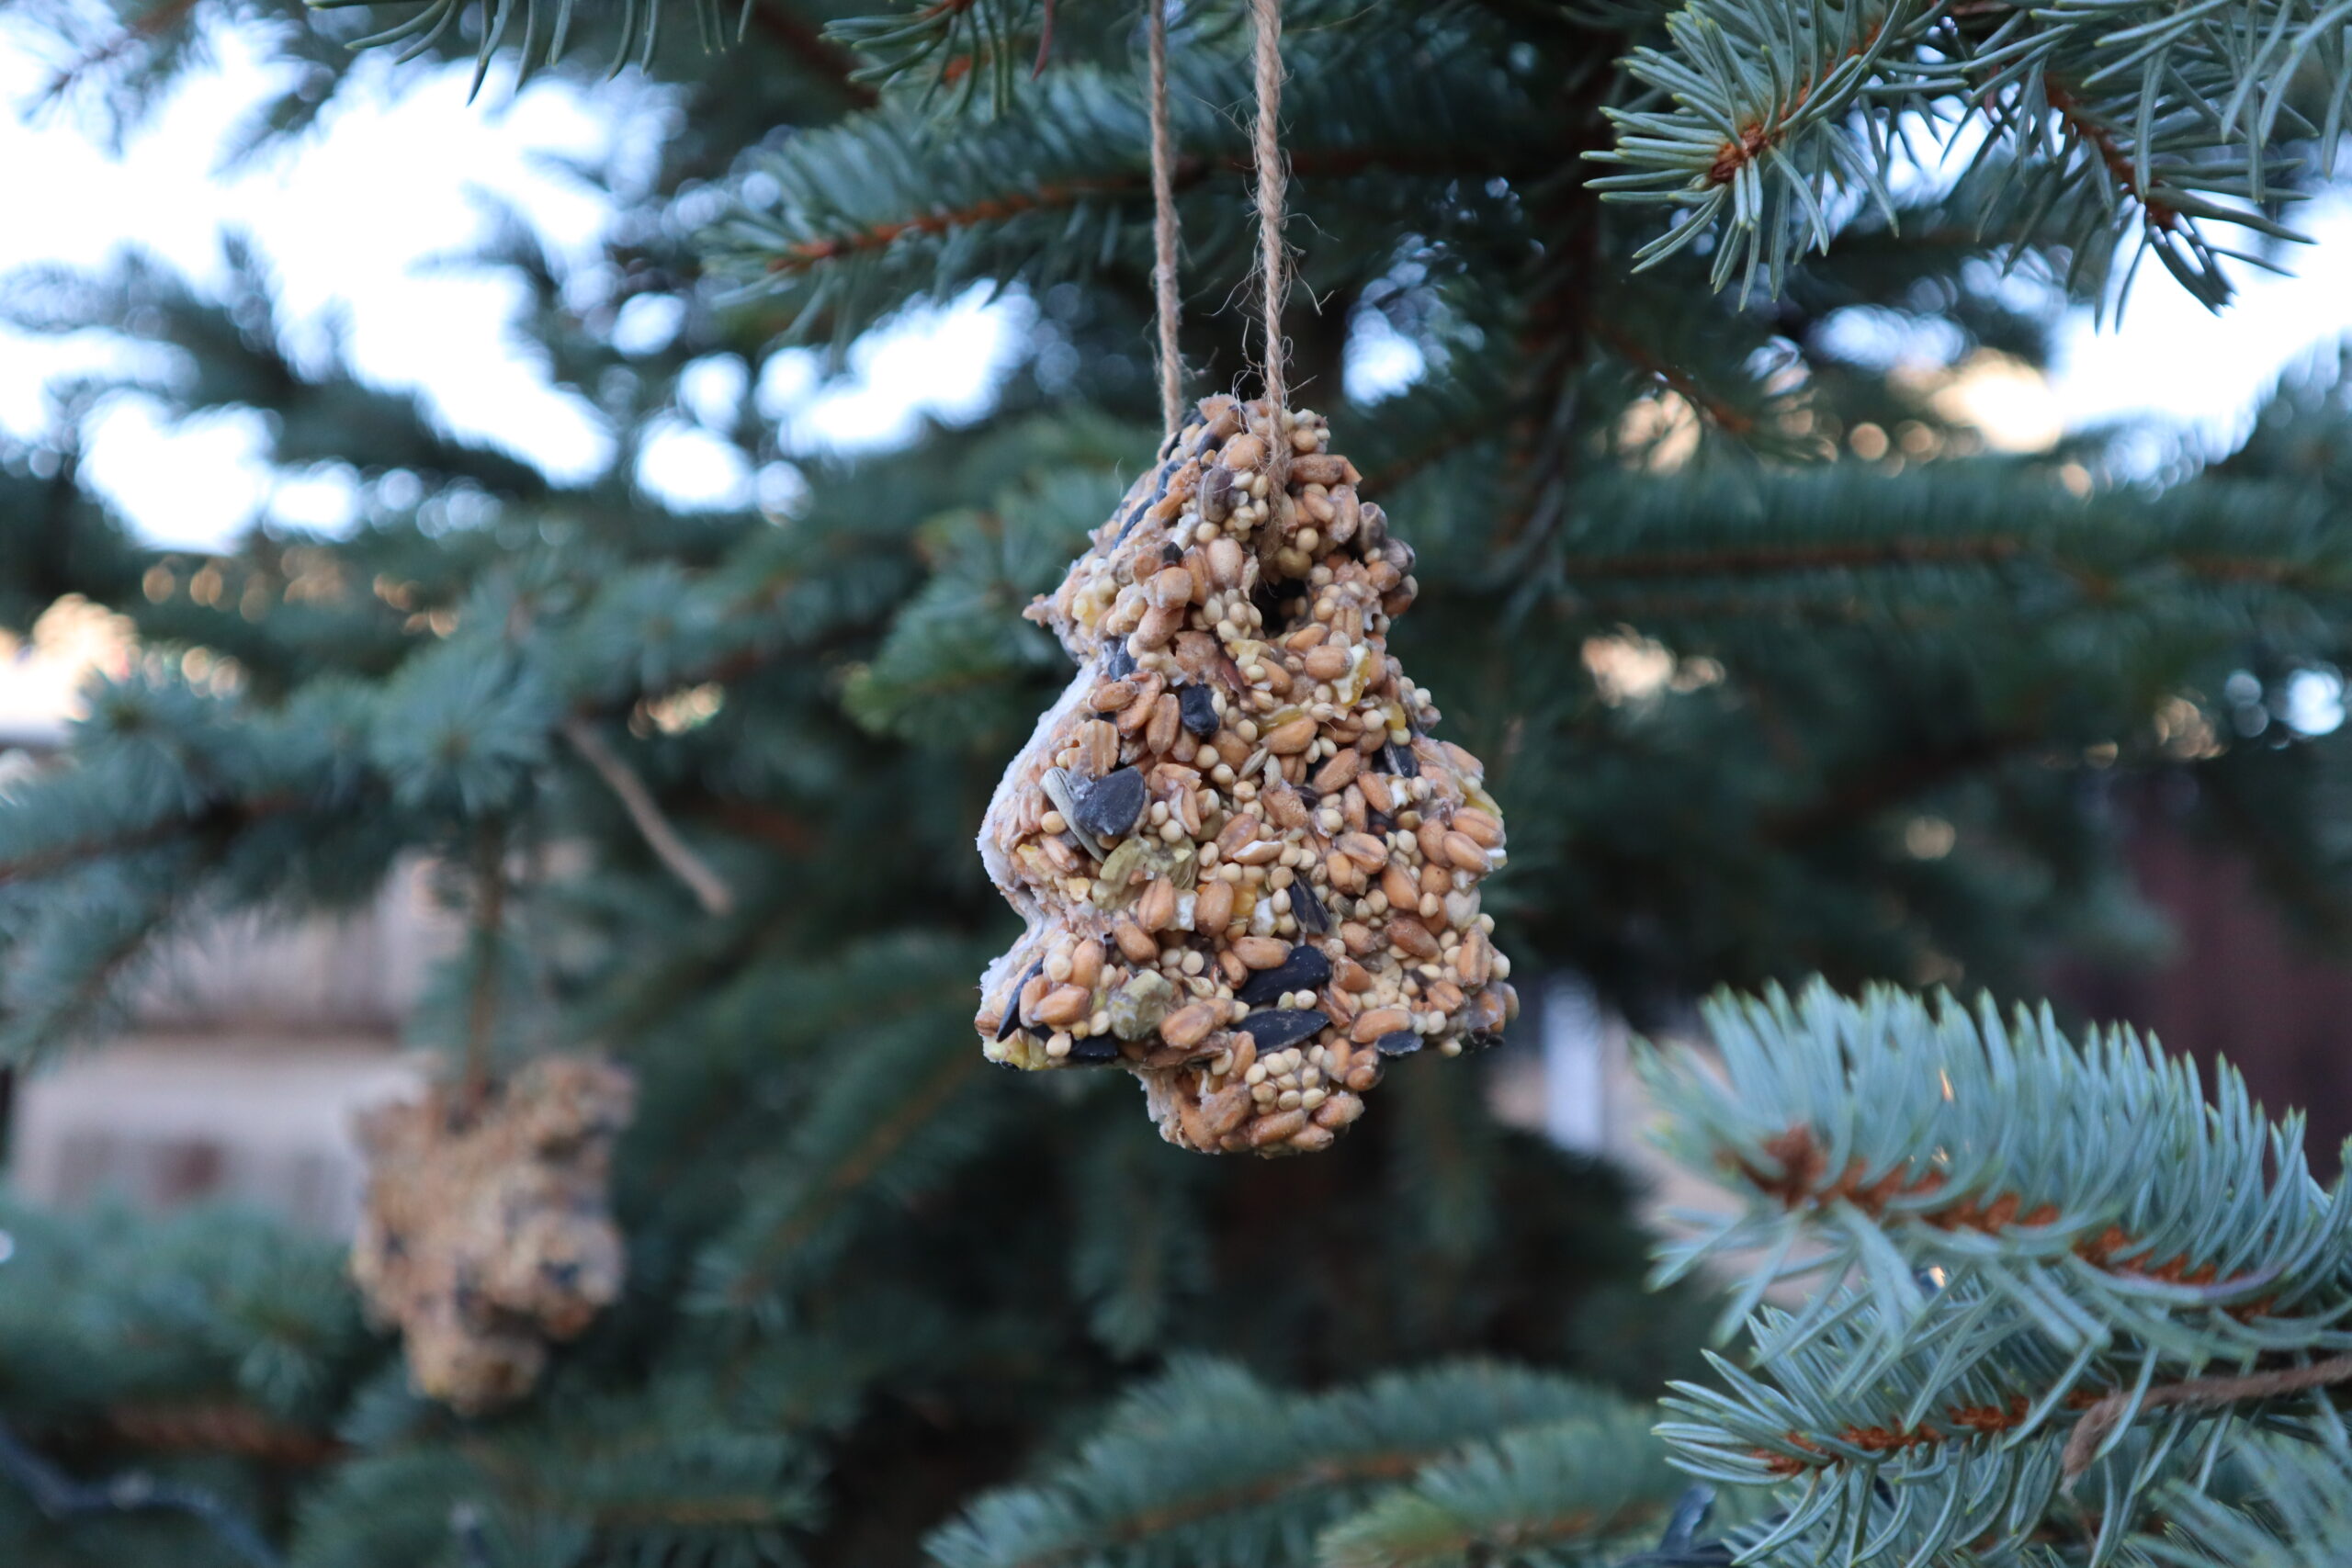 Bird feeder ornaments